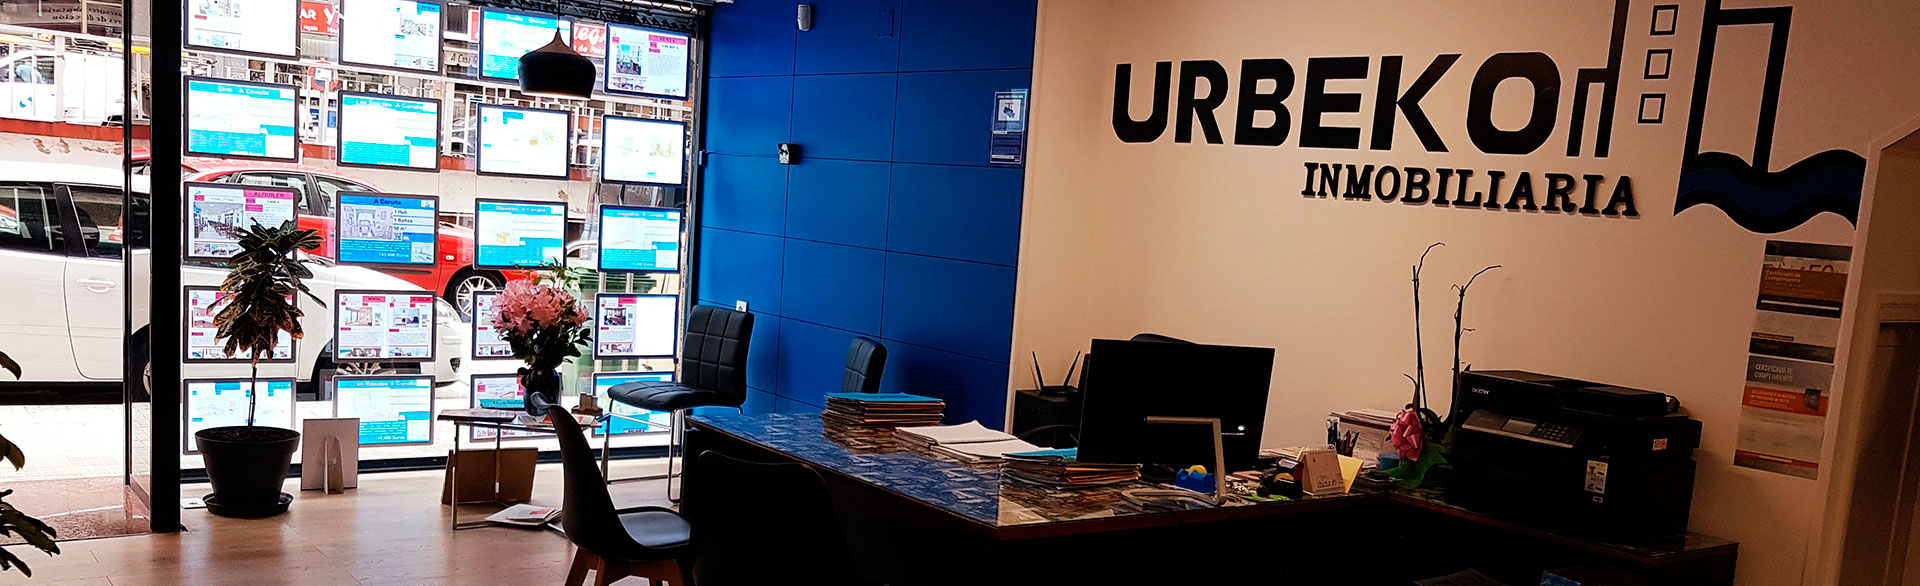 Urbeko, alquiler pisos A Coruña, es una agencia inmobiliaria en A Coruña, que presta sus servicios de intermediación en la compra-venta de inmuebles. Urbeko.